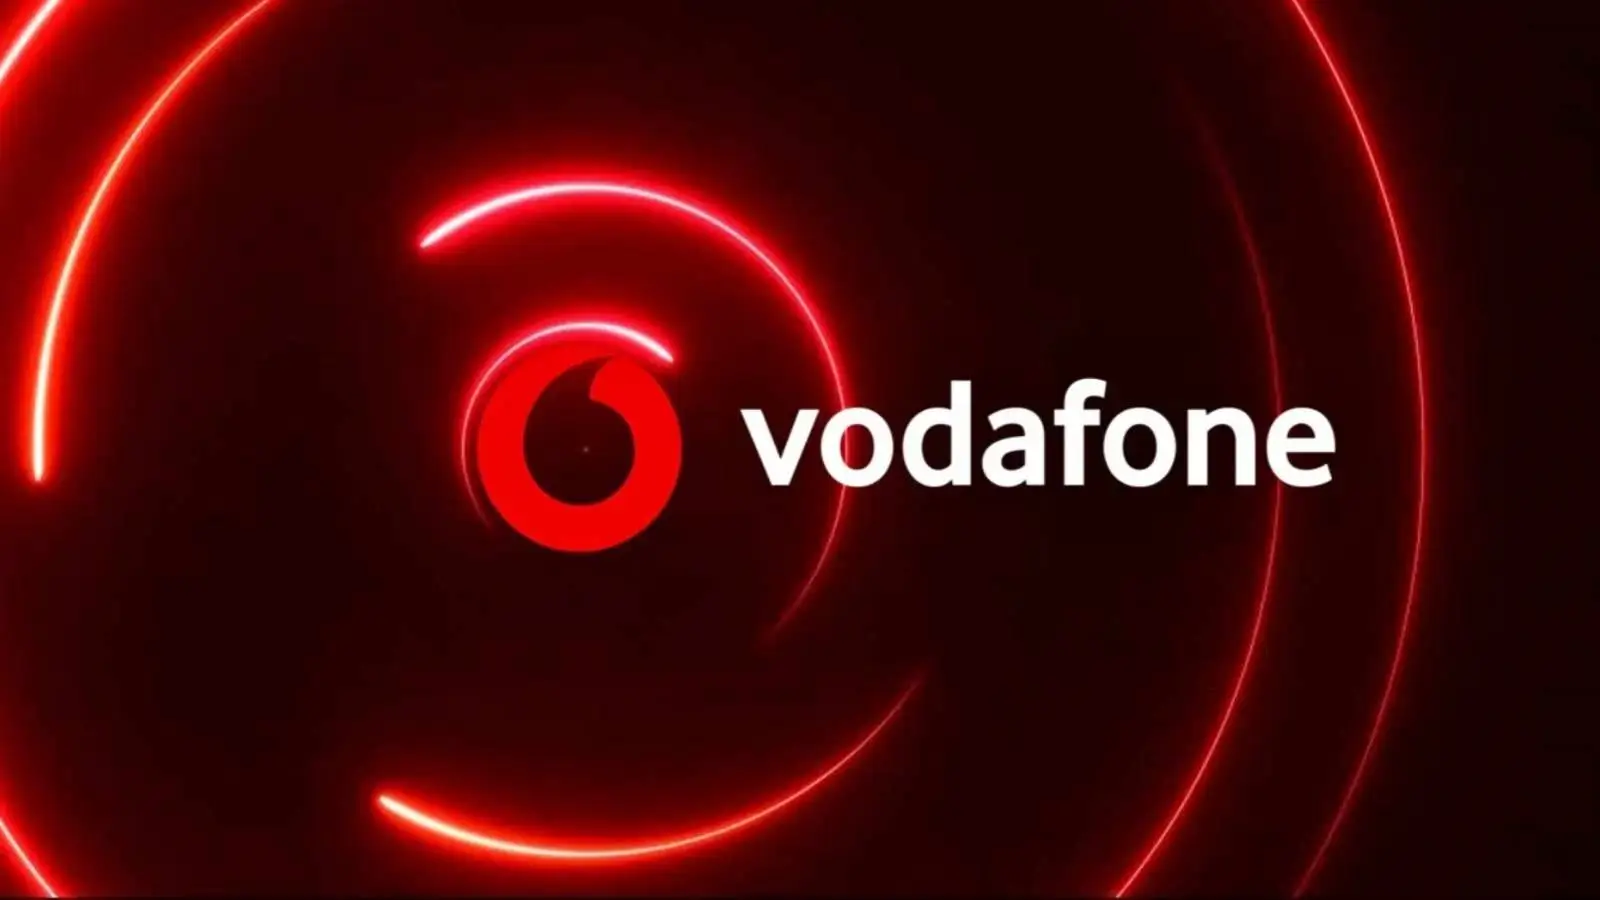 Vodafone Revolut meddelade hur mycket pengar de ger GRATIS till rumänska kunder